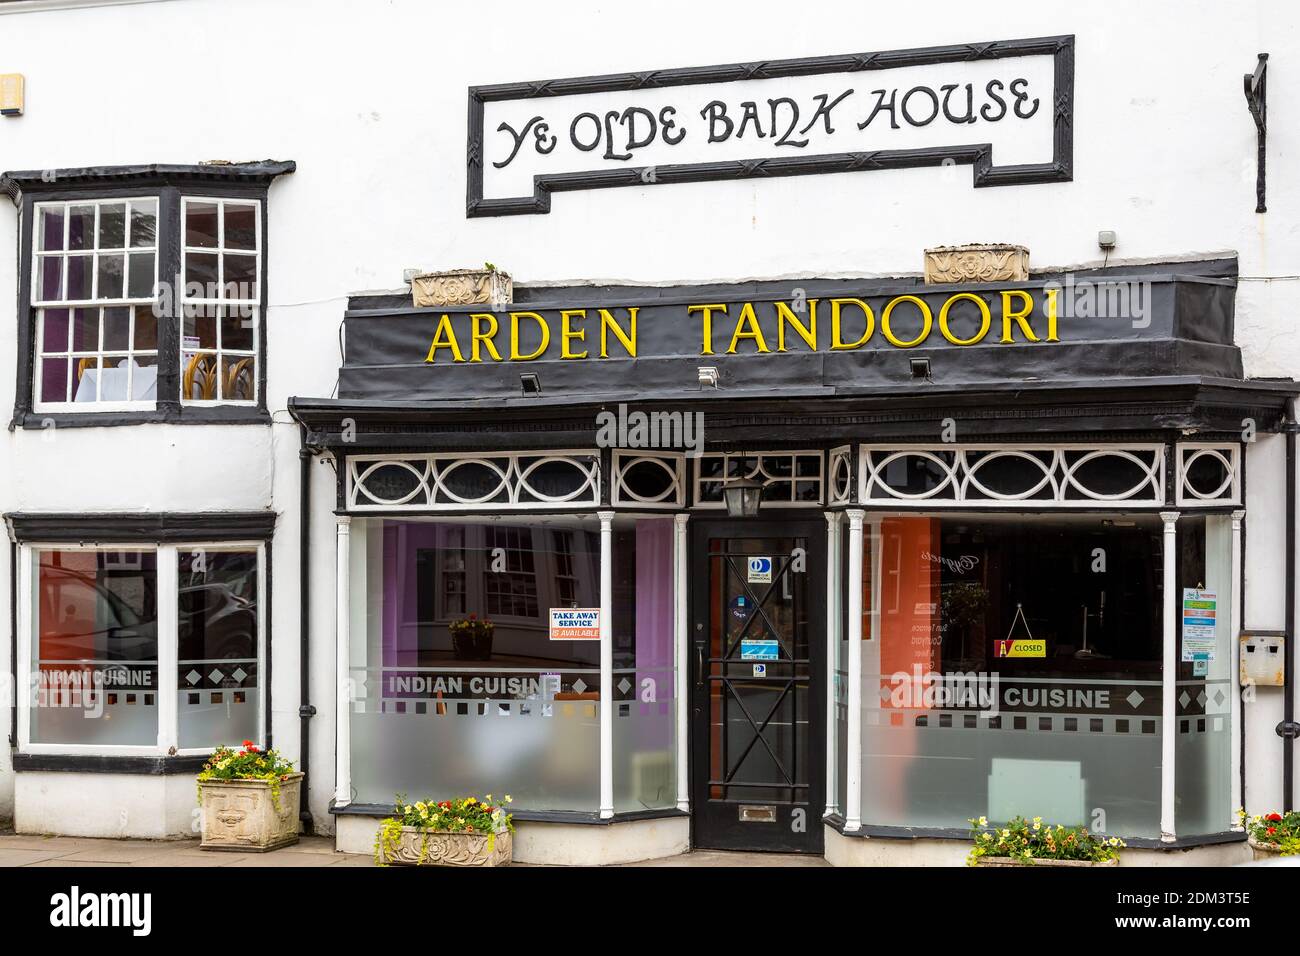 Arden Tandoori in Henley In Arden, Warwickshire. Stock Photo